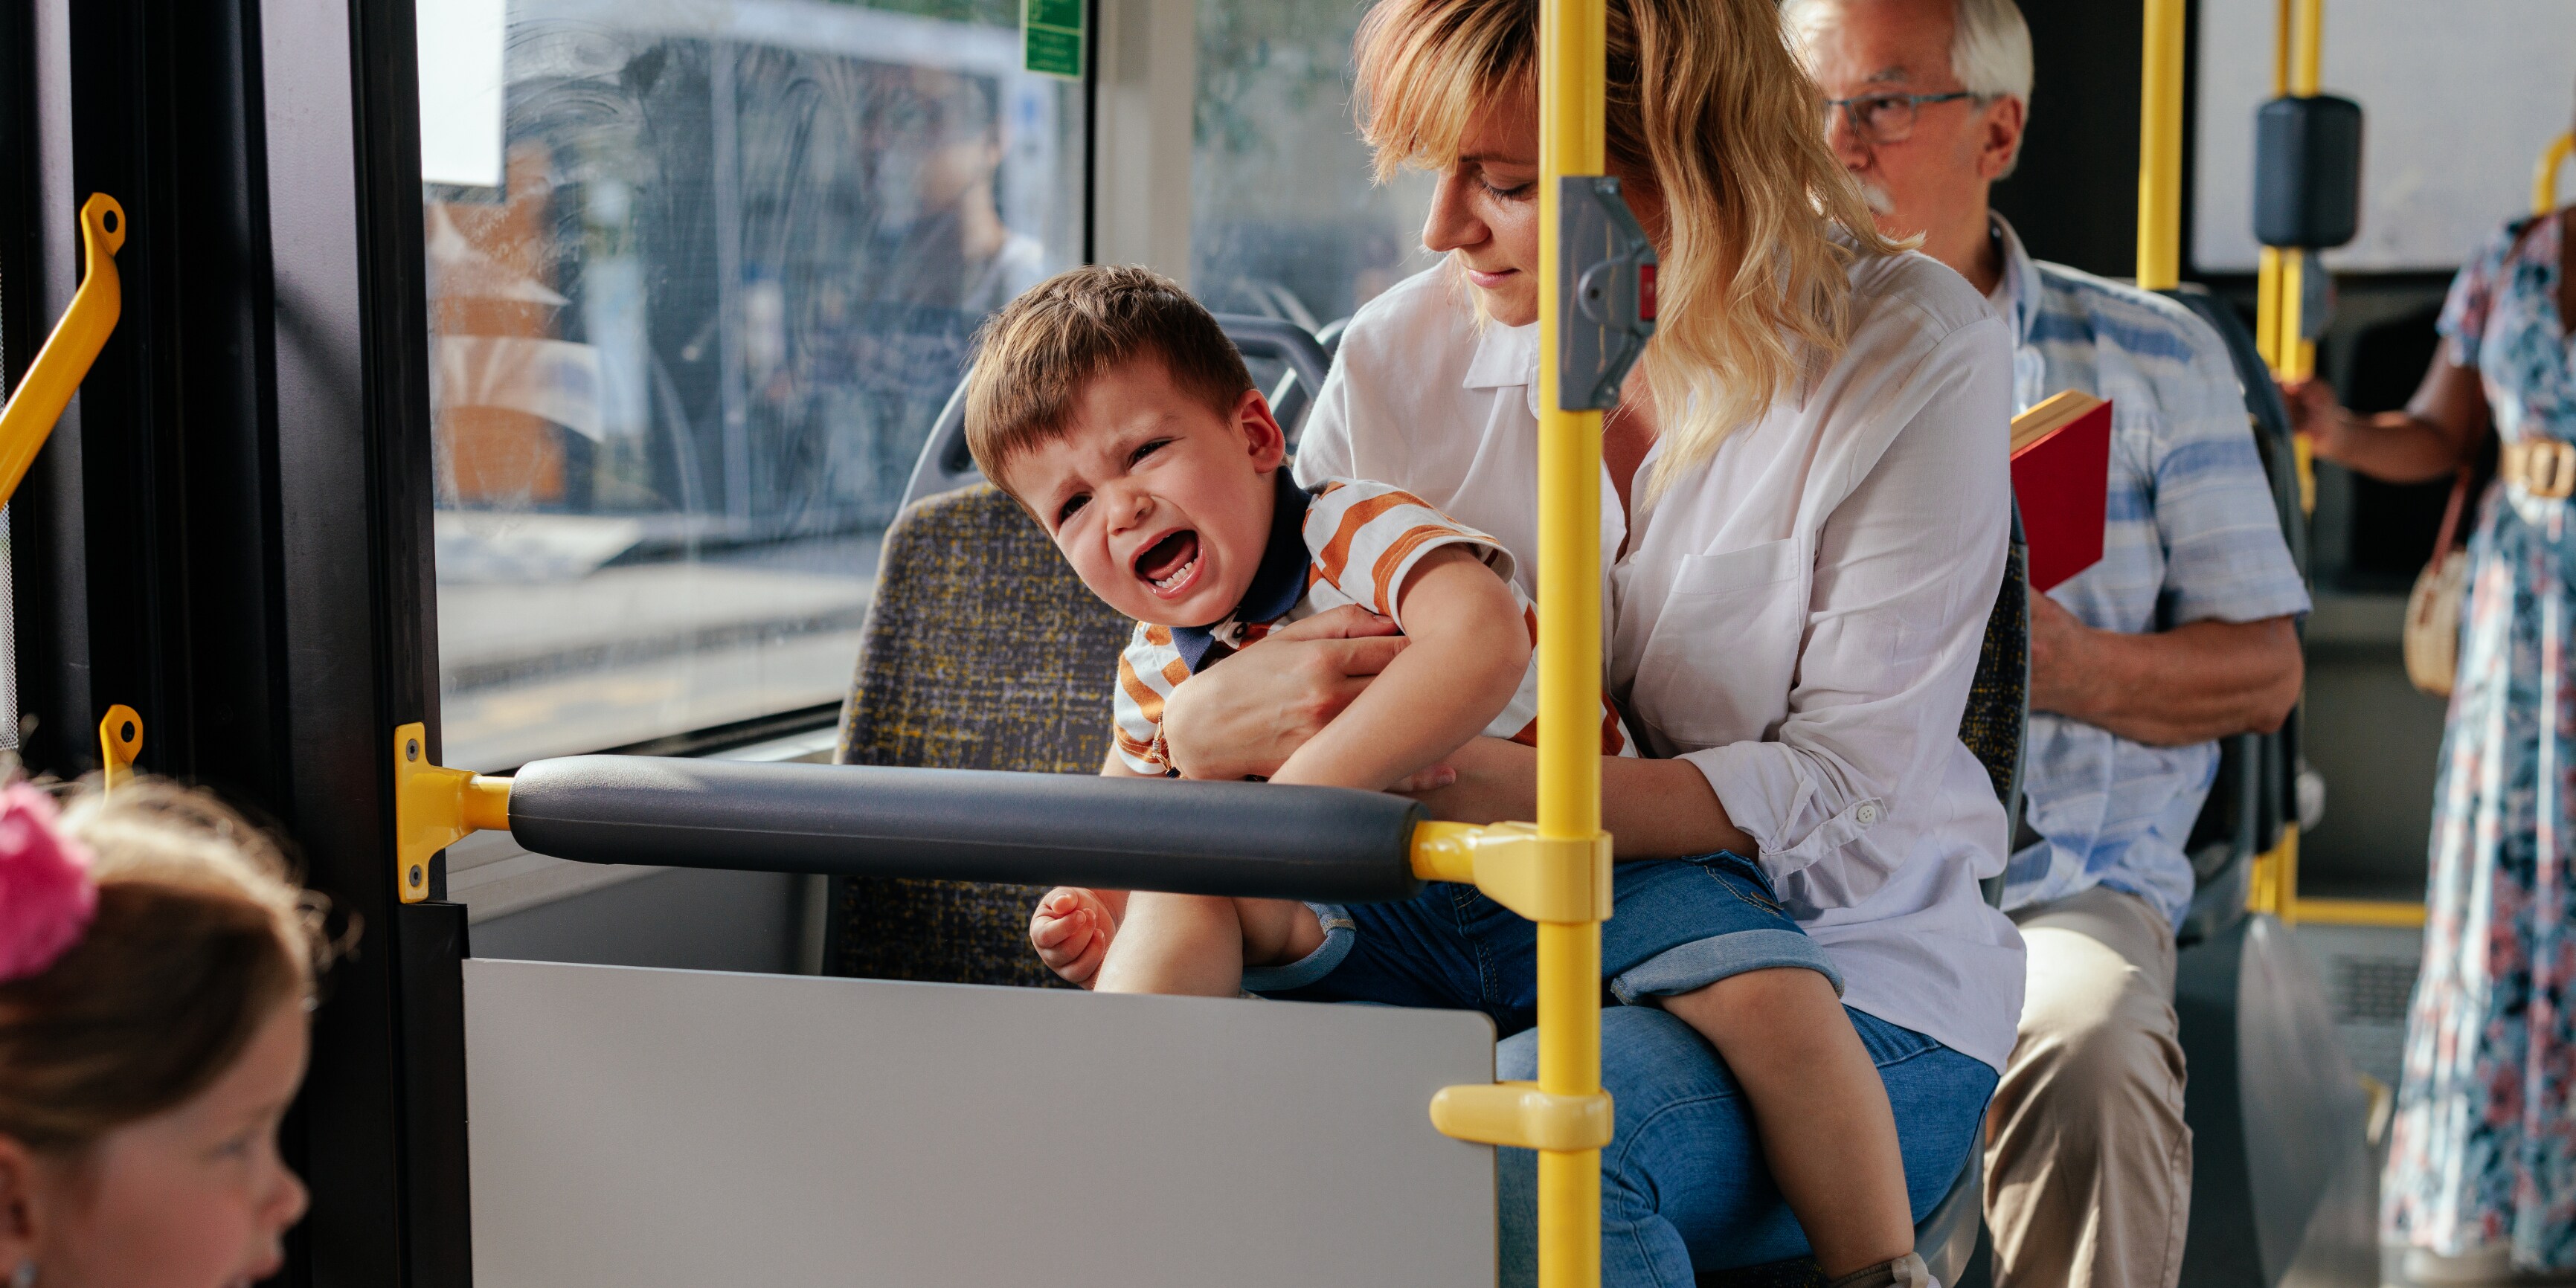 andere fahrgäste protestieren - fahrer schmeißt mutter mit schreiendem kleinkind aus dem bus